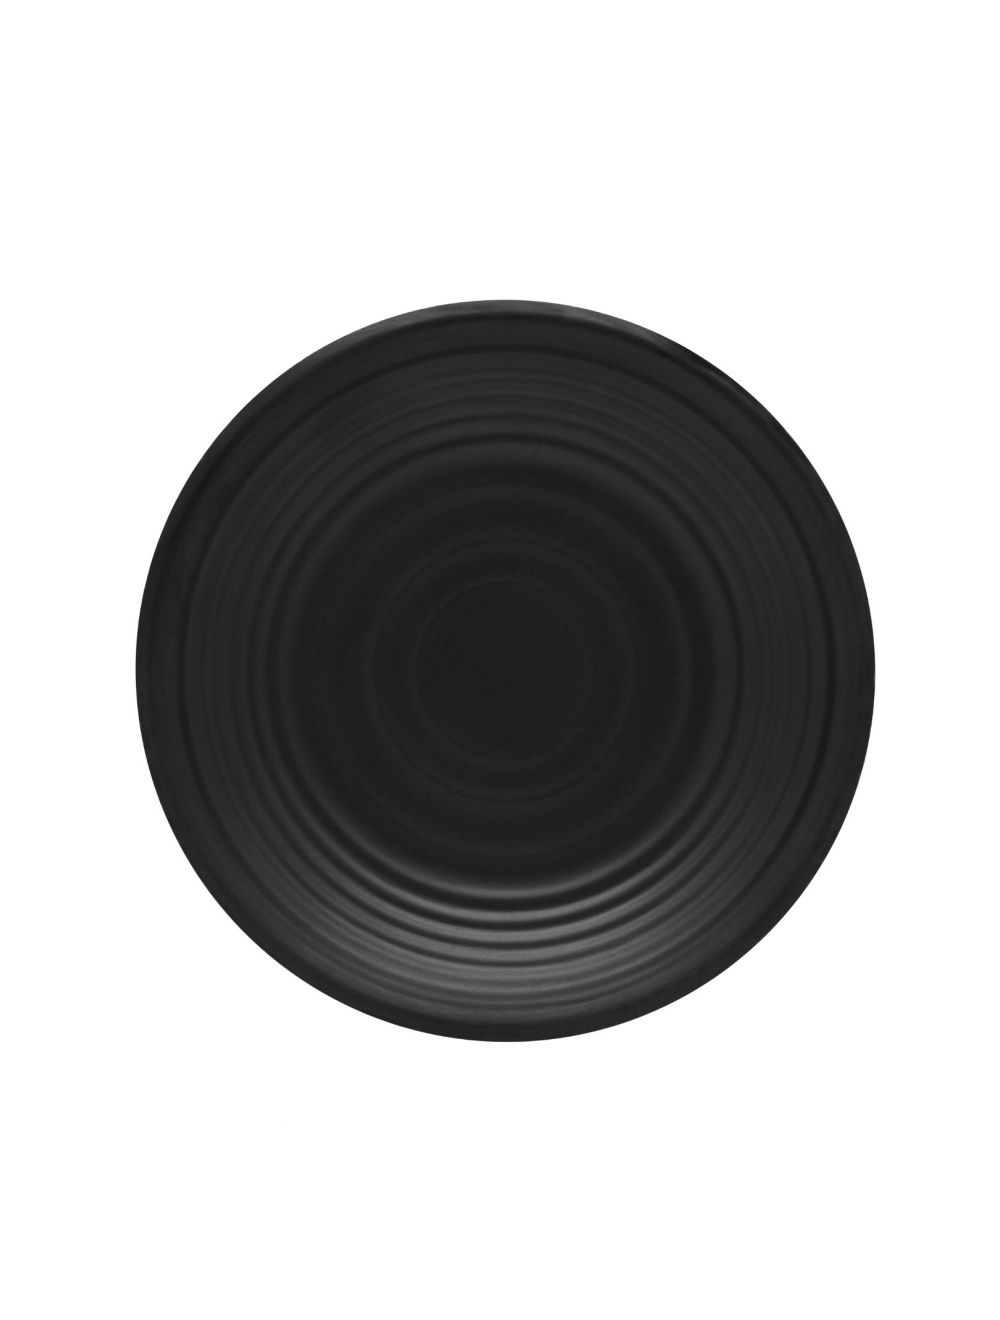 Dinewell Melamine Dinner Plate Black Matte Finish-DWMP025B